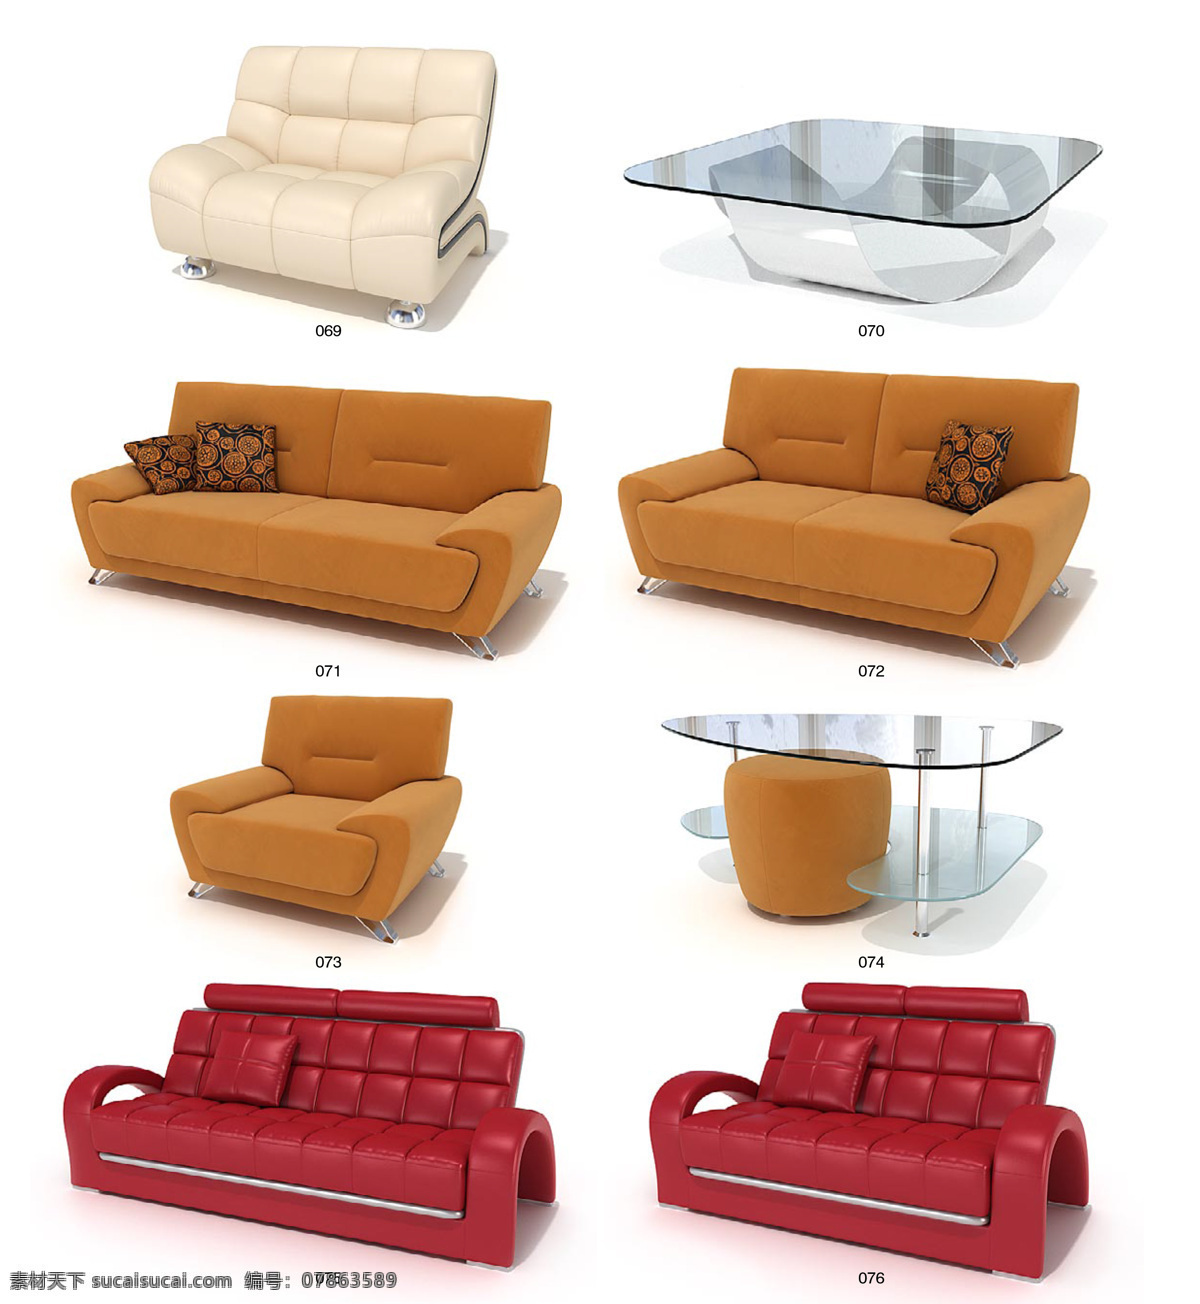 精美 沙发椅子 茶几 max 模型 带 材质 贴图 3d家具模型 3d模型素材 3d设计模型 创意沙发 家具模型 沙发 白色